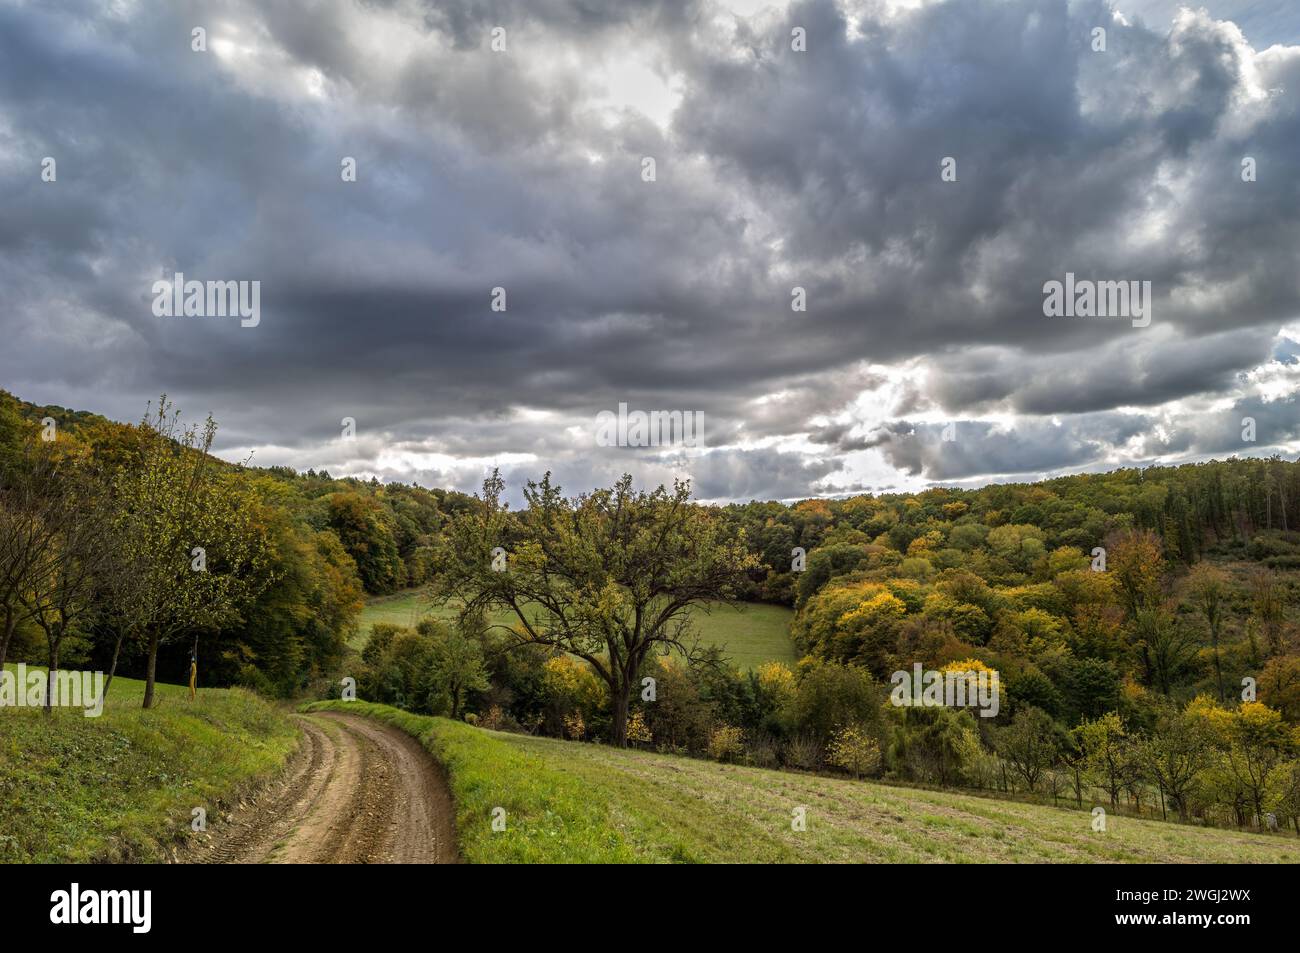 Herbstliche ländliche Landschaft mit Weg und Wald. Wunderschöner, bewölkter blauer Himmel mit der Sonne hinter grauen Wolken. Dubrava, Slowakei Stockfoto